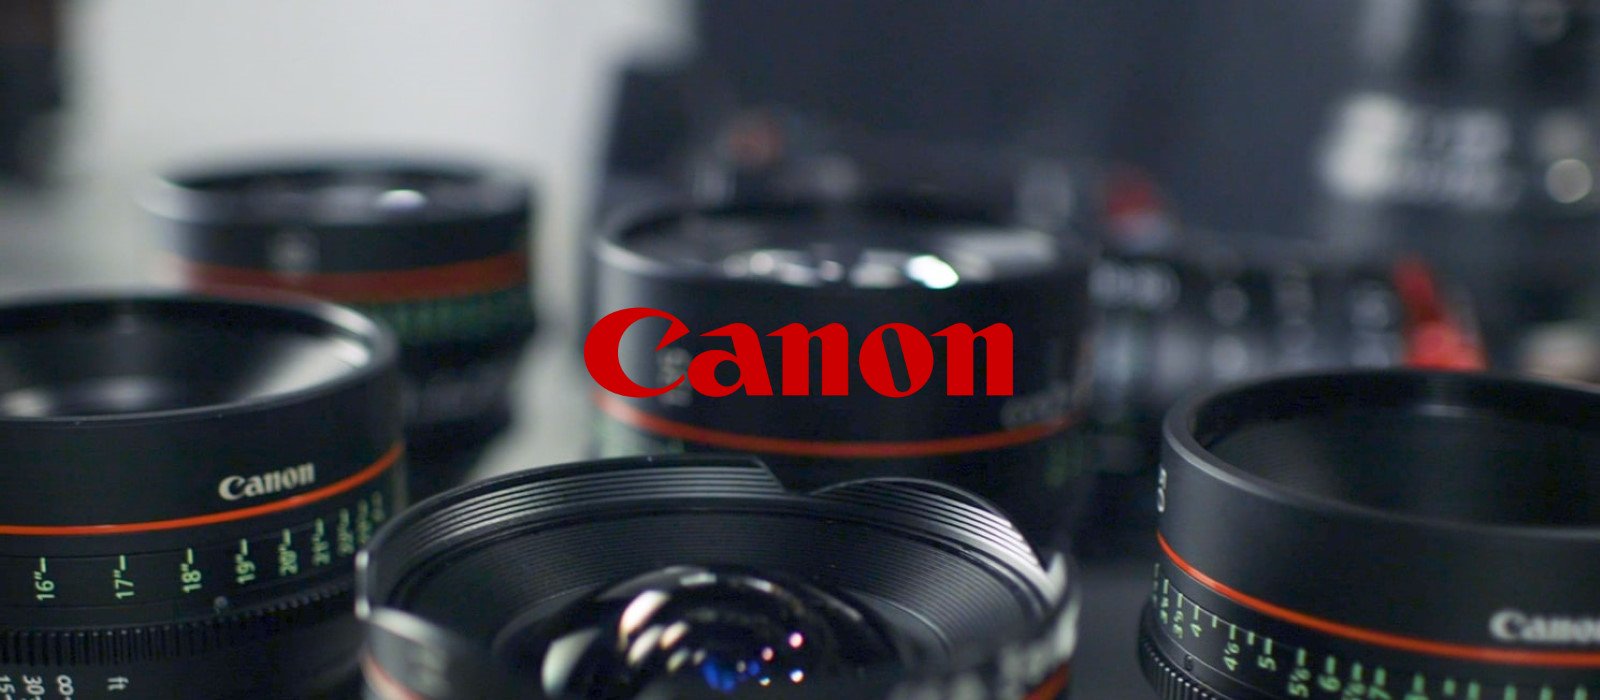 Canon confirms ransomware attack in internal memo